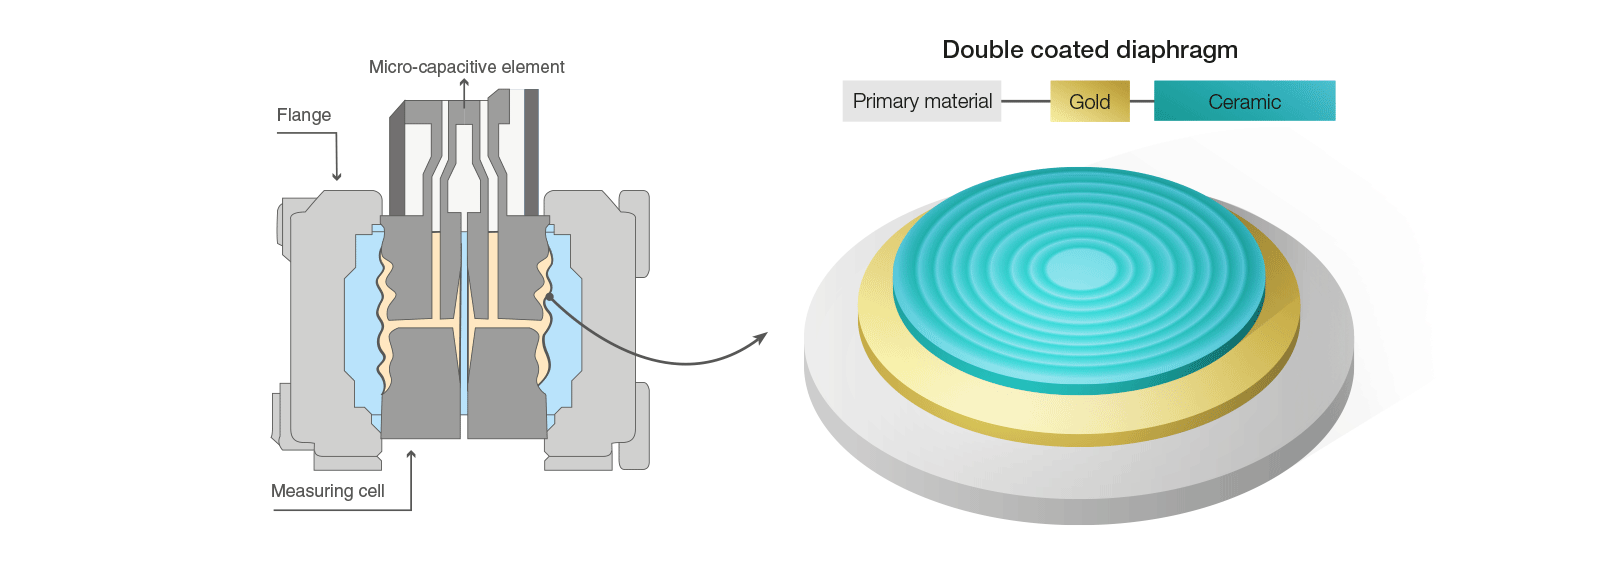 diagrama del sensor de presión de diafragma para hidrógeno